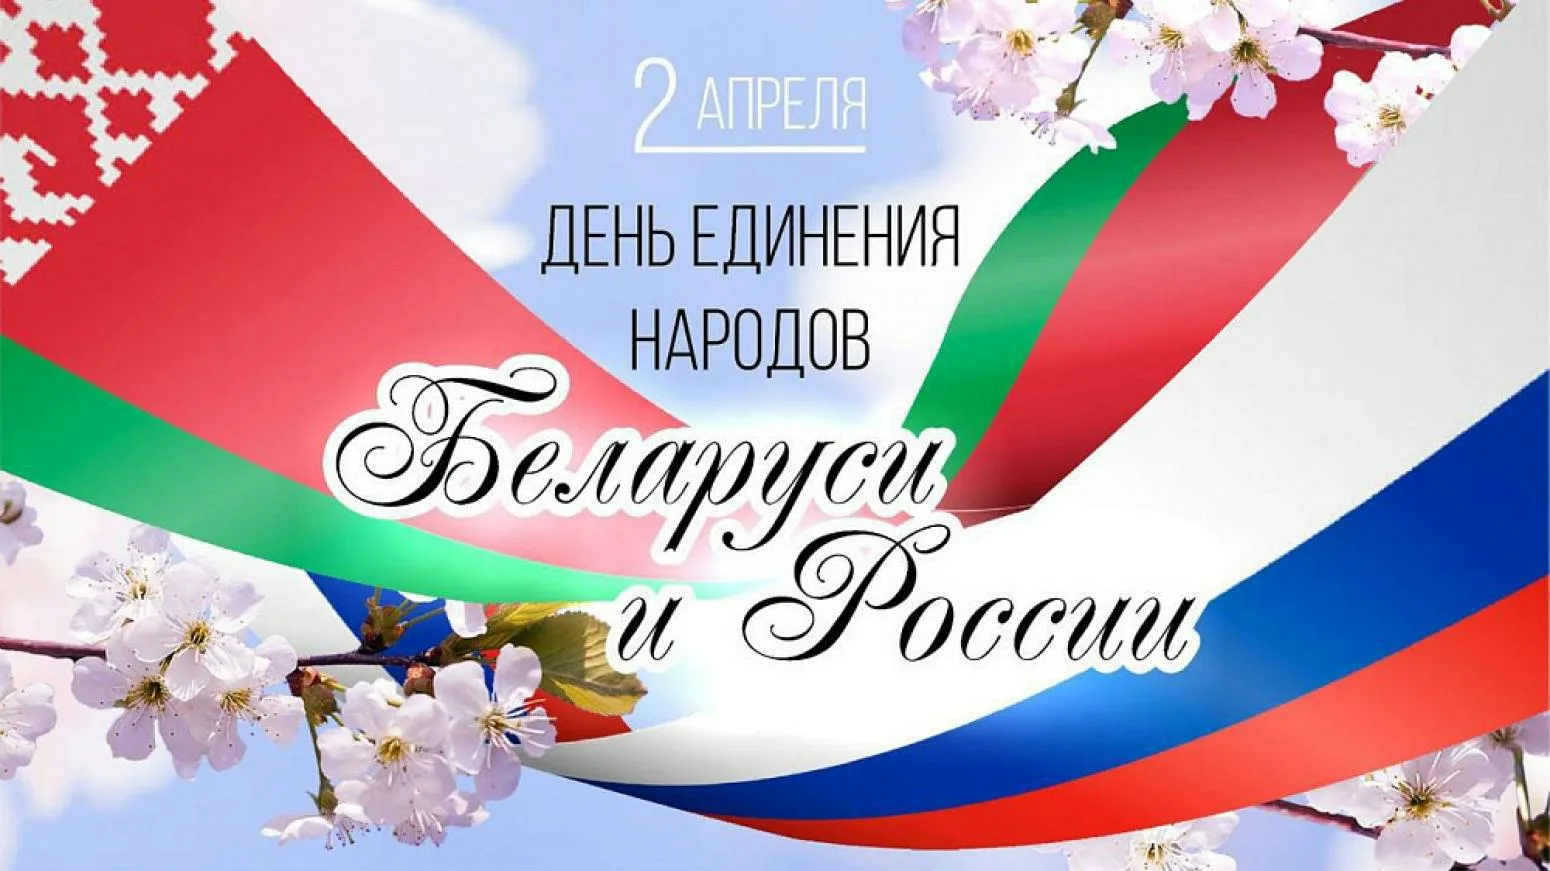 Фото День единения народов России и Беларуси #22